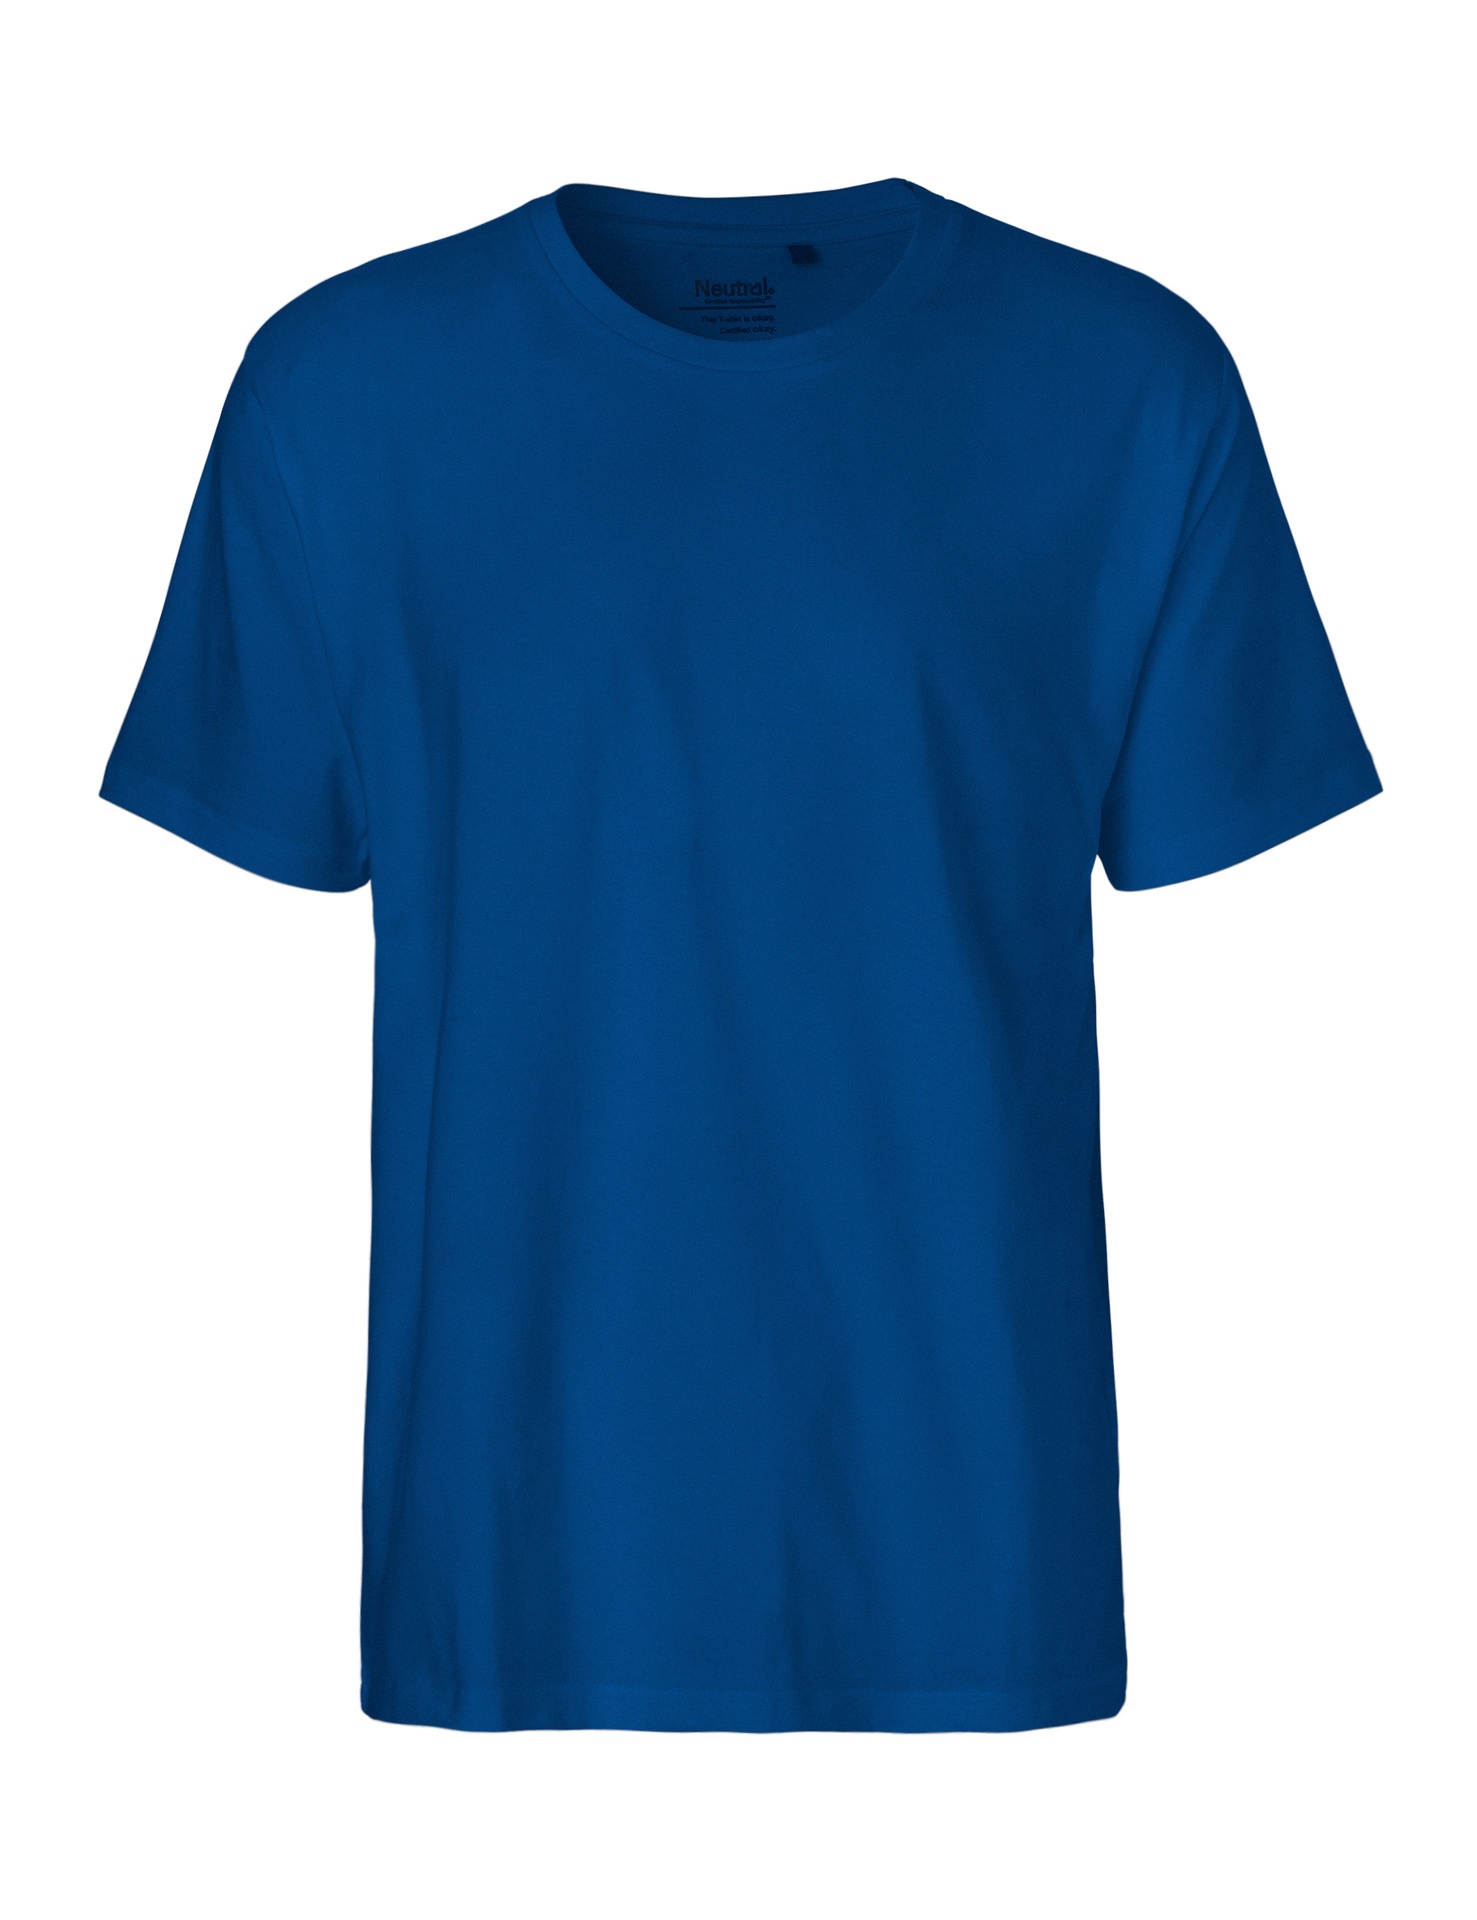 [PR/01355] Mens Classic T-Shirt (Royal 51, 3XL)